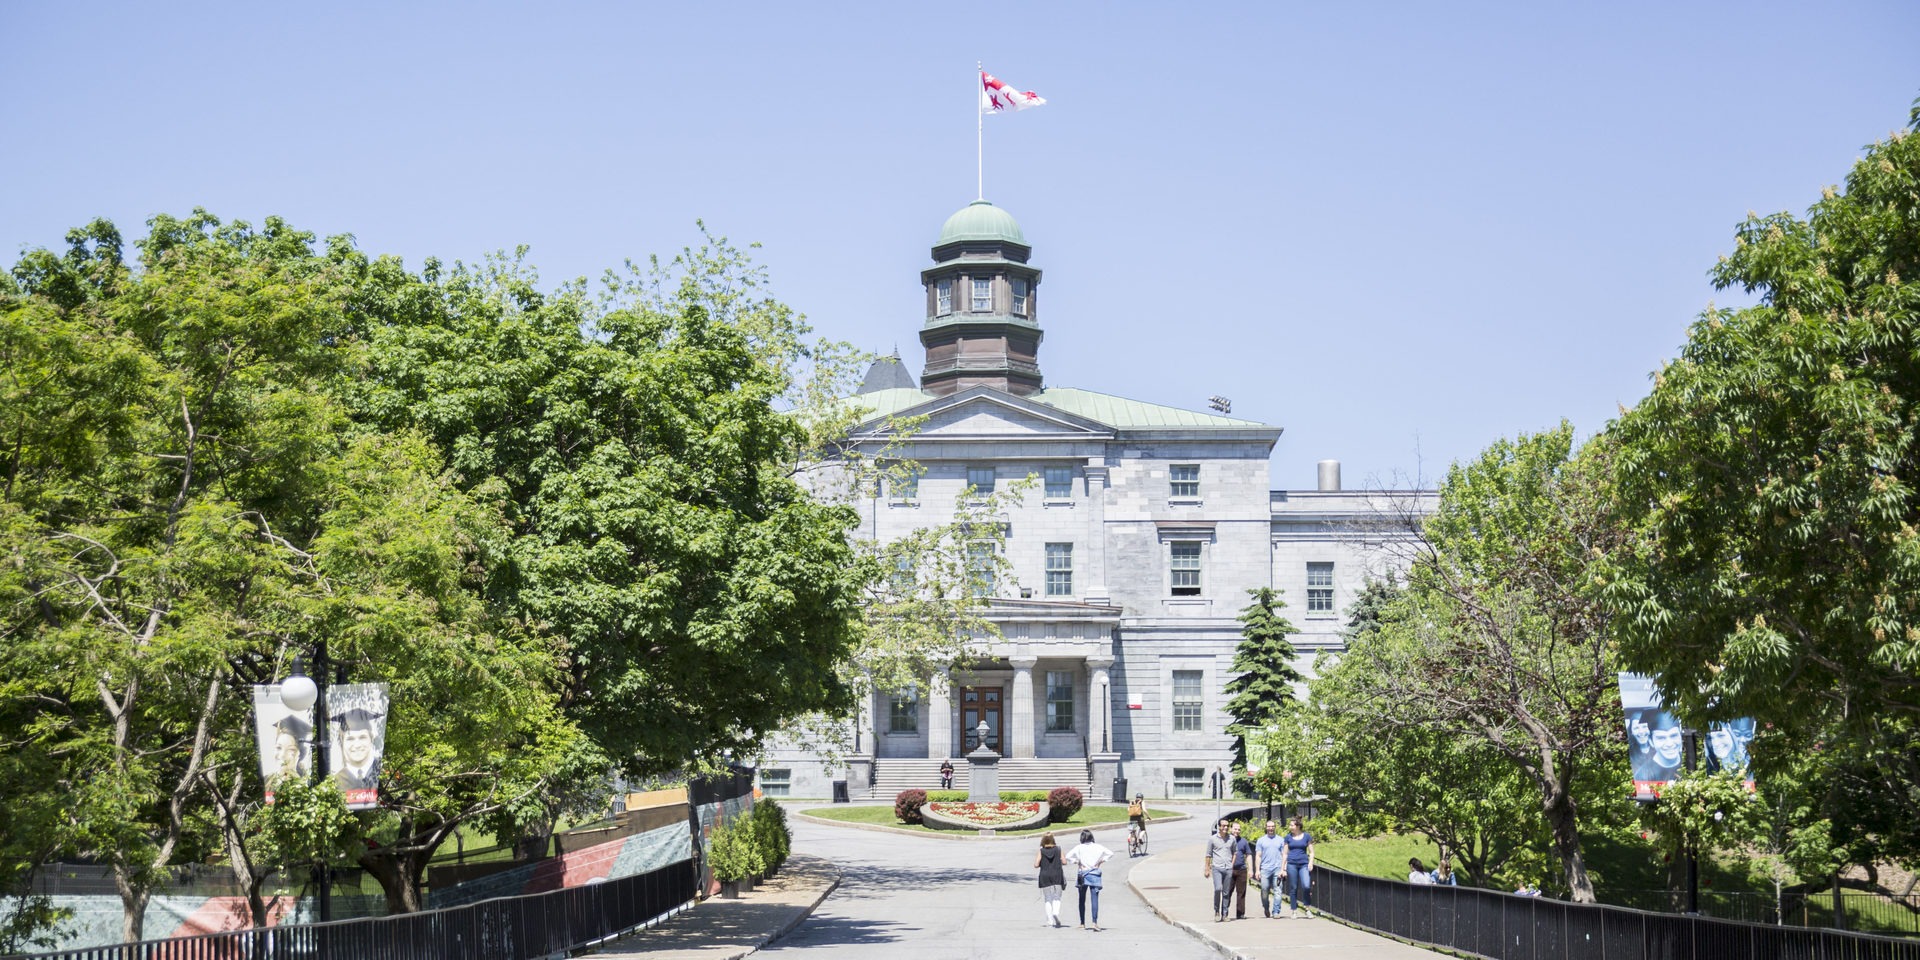 دانشگاه مک گیل، واقع در مونترال، کبک، یکی از برترین دانشگاه های کانادا و جهان است. مک گیل با سابقه ای غنی که به سال 1821 بازمی گردد، بیش از دو قرن در خط مقدم تحقیق، نوآوری و آموزش بوده است.